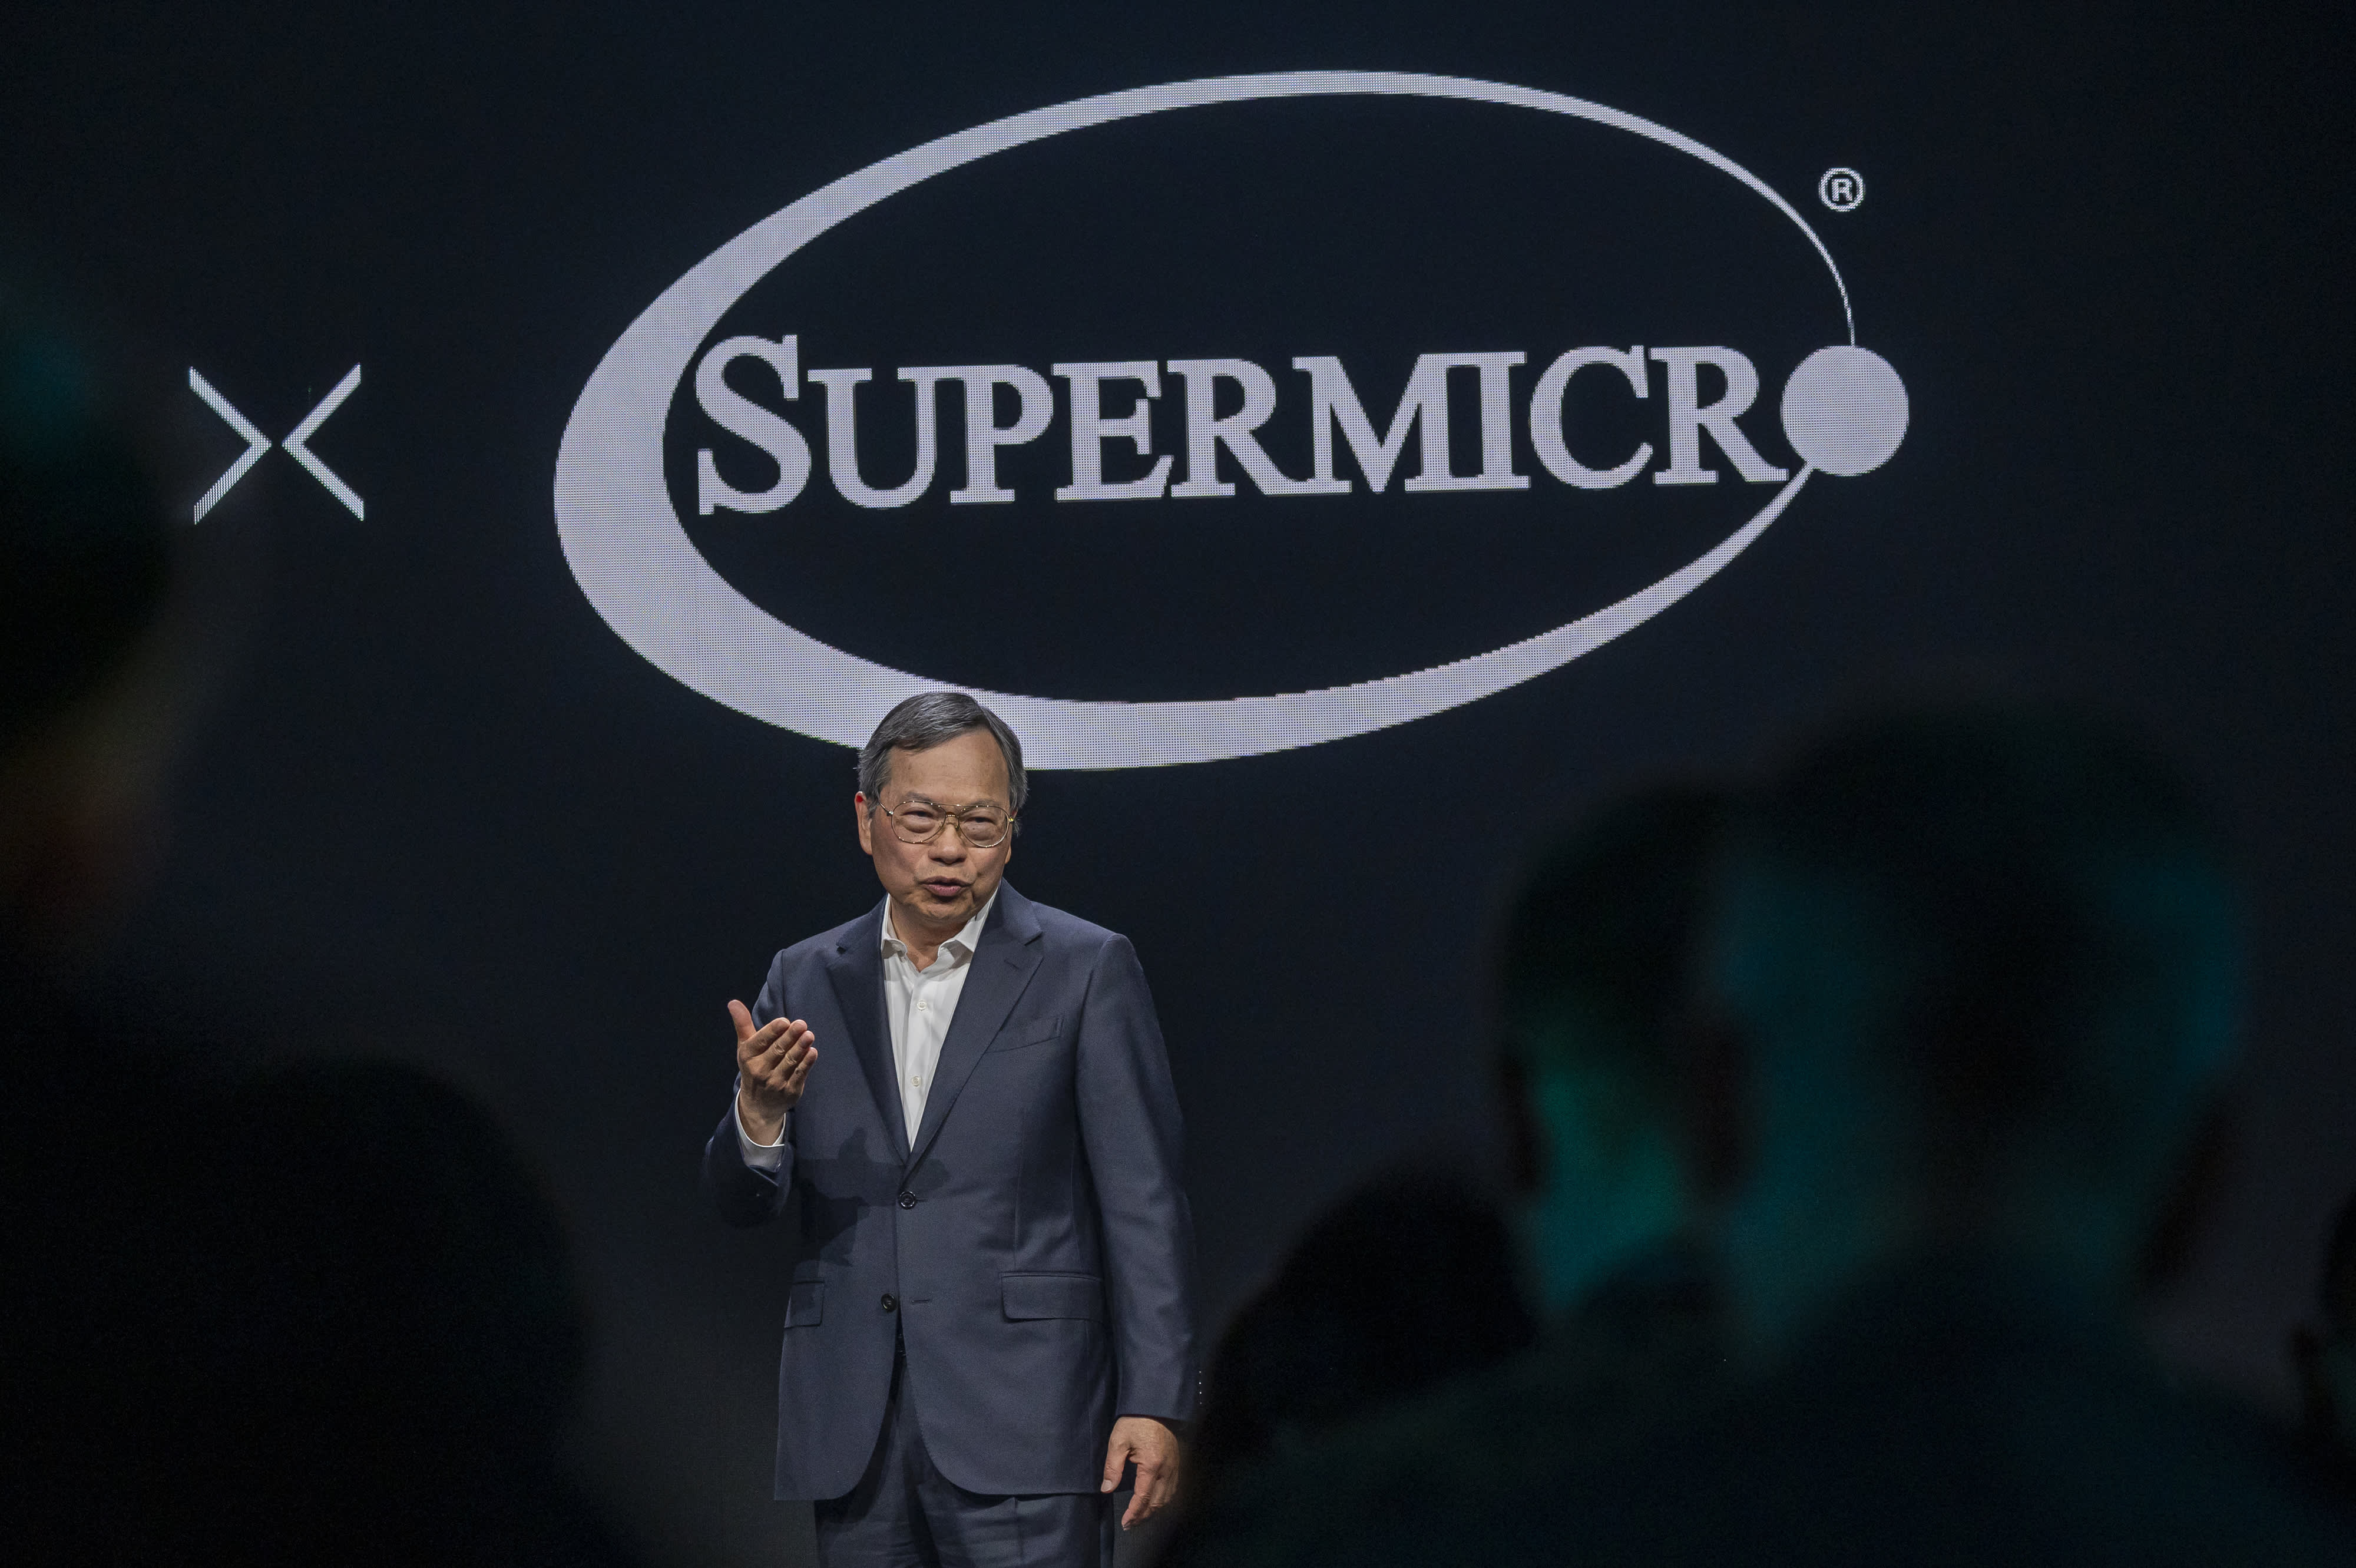 A Super Micro csatlakozott az S&P 500-hoz, miután két év alatt húszszorosára emelkedett a részvények árfolyama